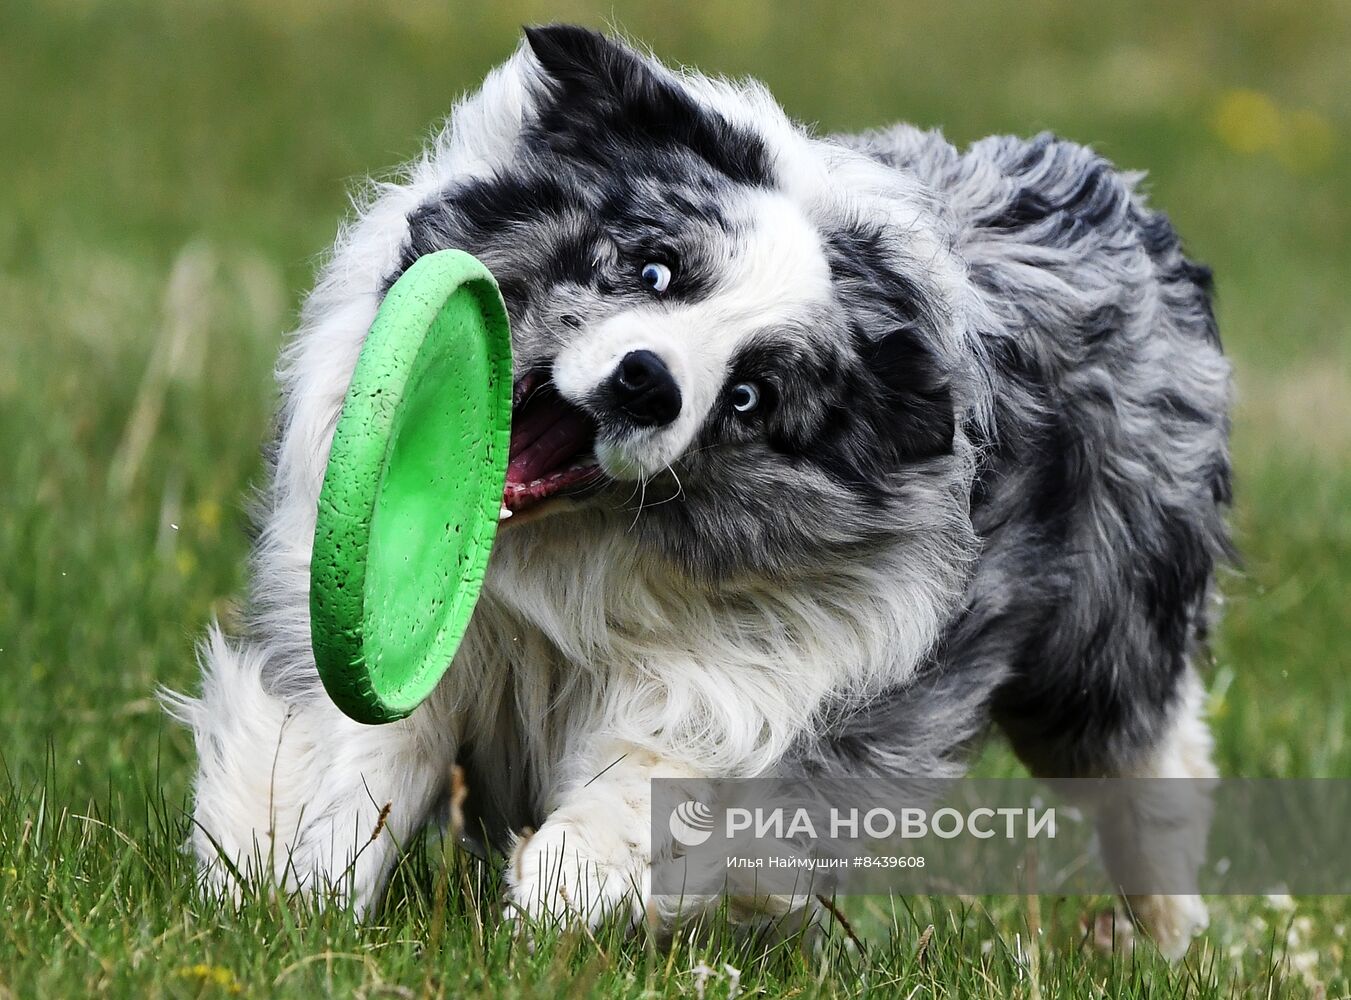 Соревнования по кинологическому спорту "Летающий пёс" в Красноярске